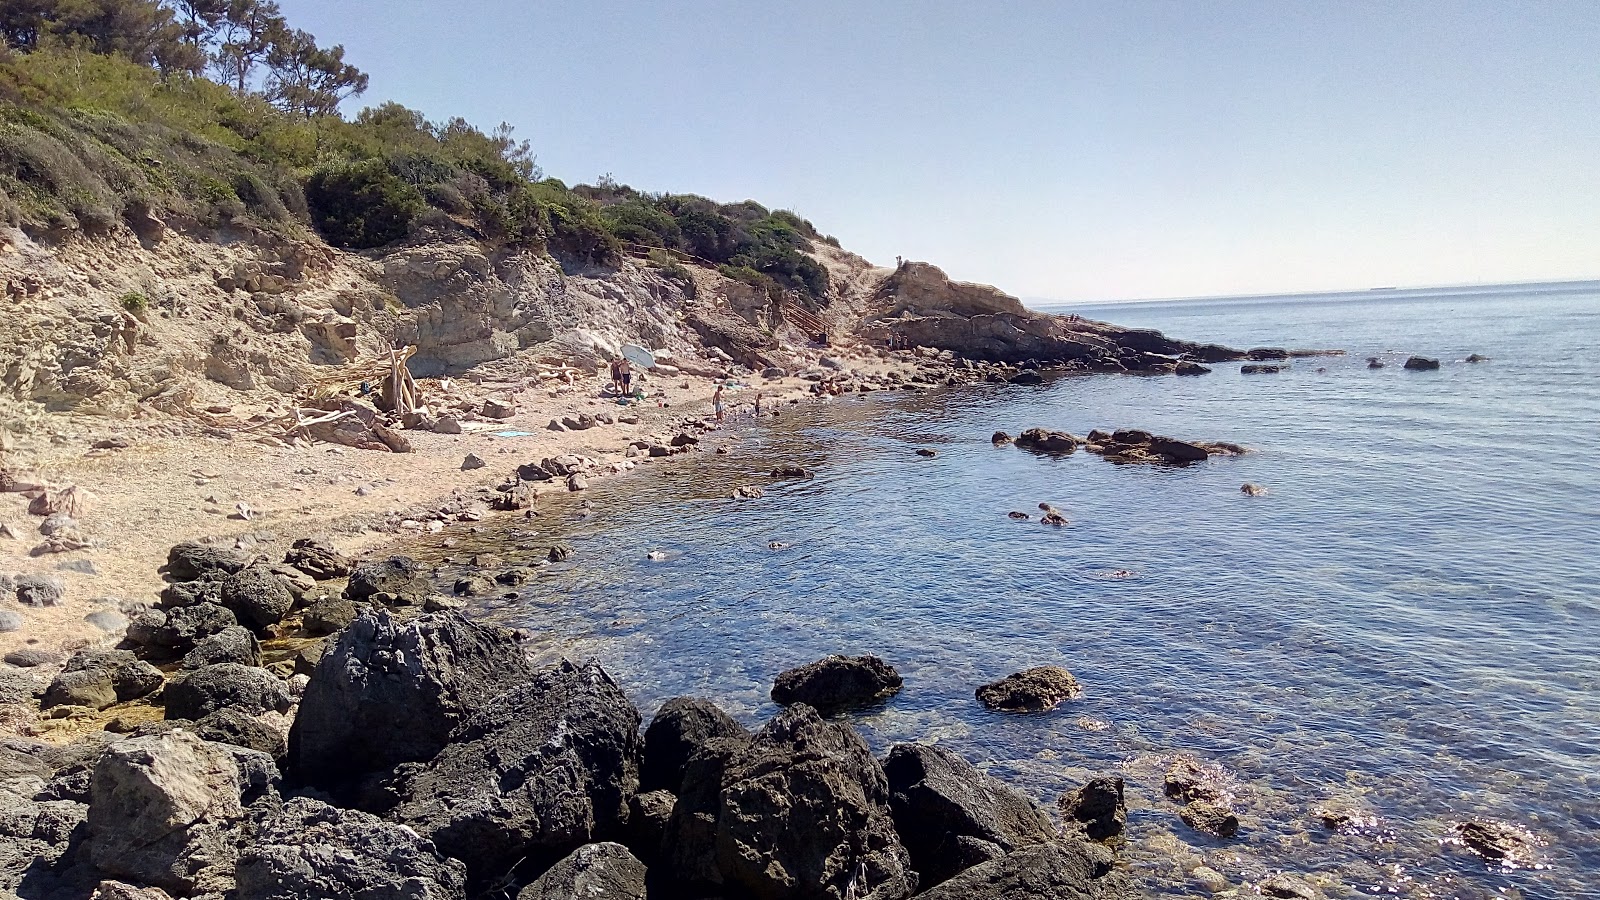 Photo of Spiaggia La Piletta located in natural area